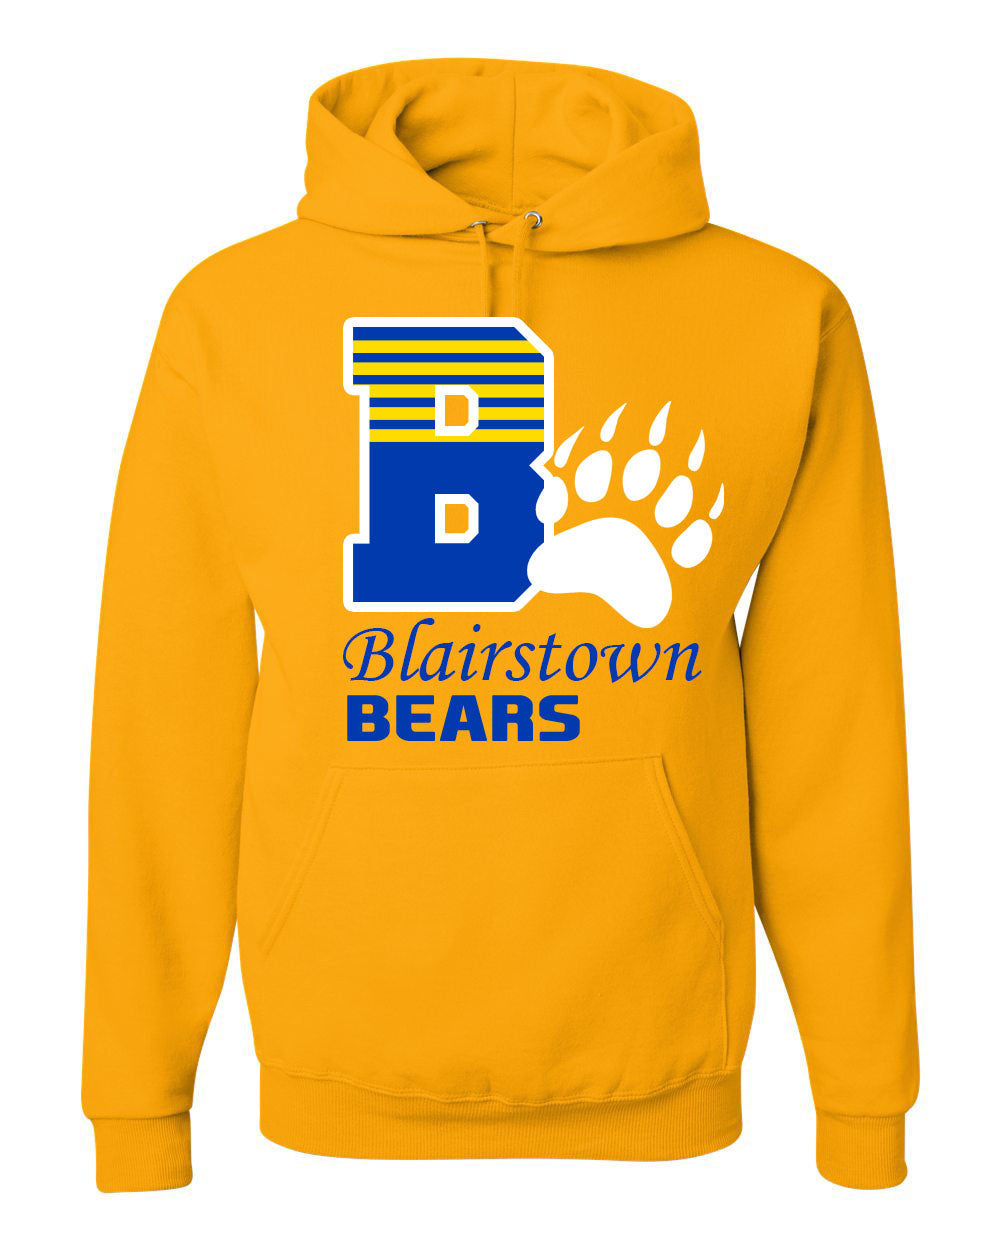 Bears design 8 Yellow Hooded Sweatshirt